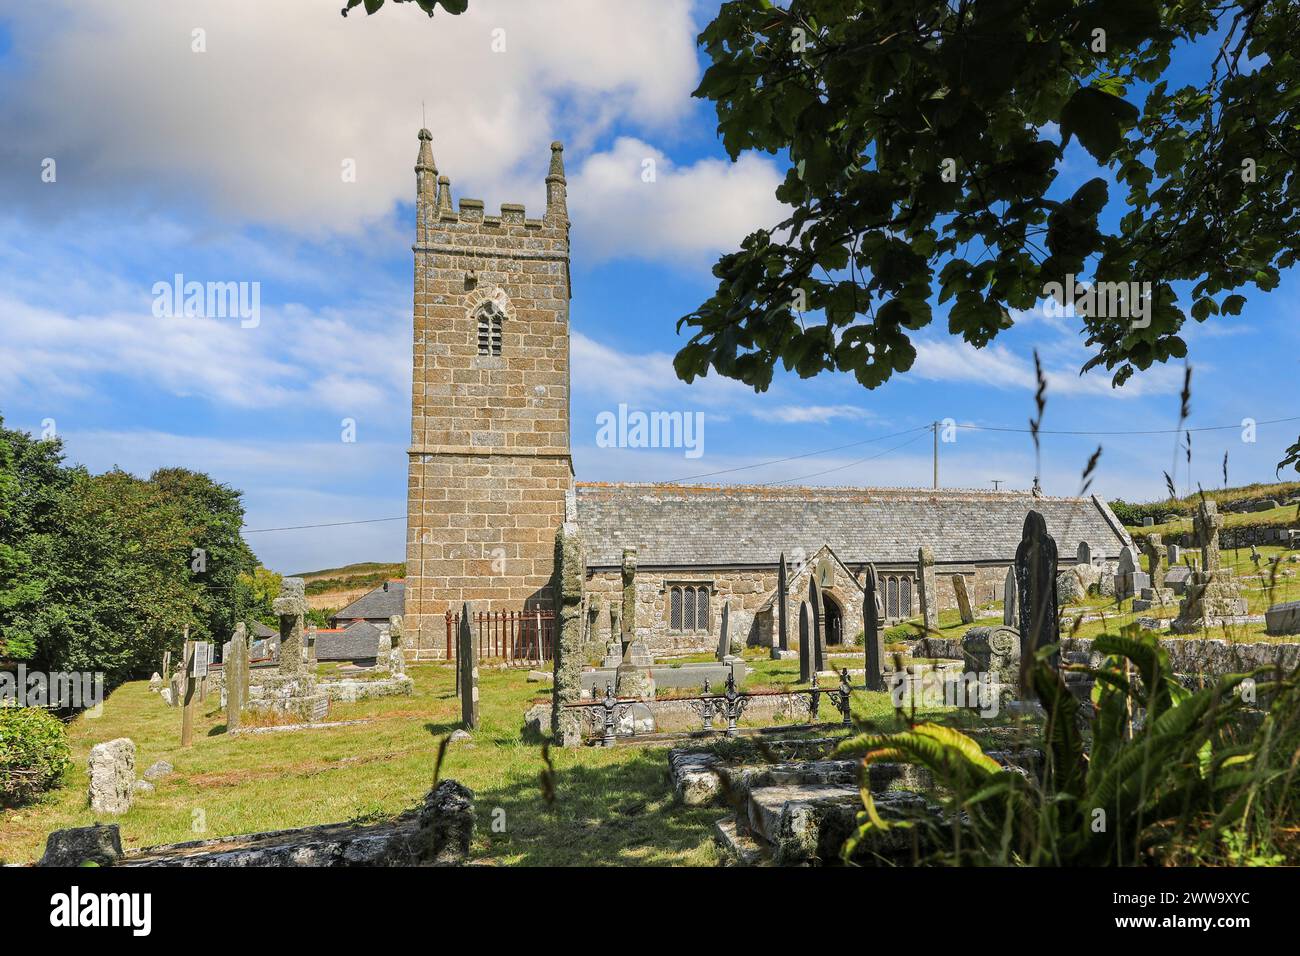 St Levan la chiesa di St Levan è una chiesa parrocchiale della chiesa di Inghilterra si trova in St Levan, Cornwall, England, Regno Unito Foto Stock